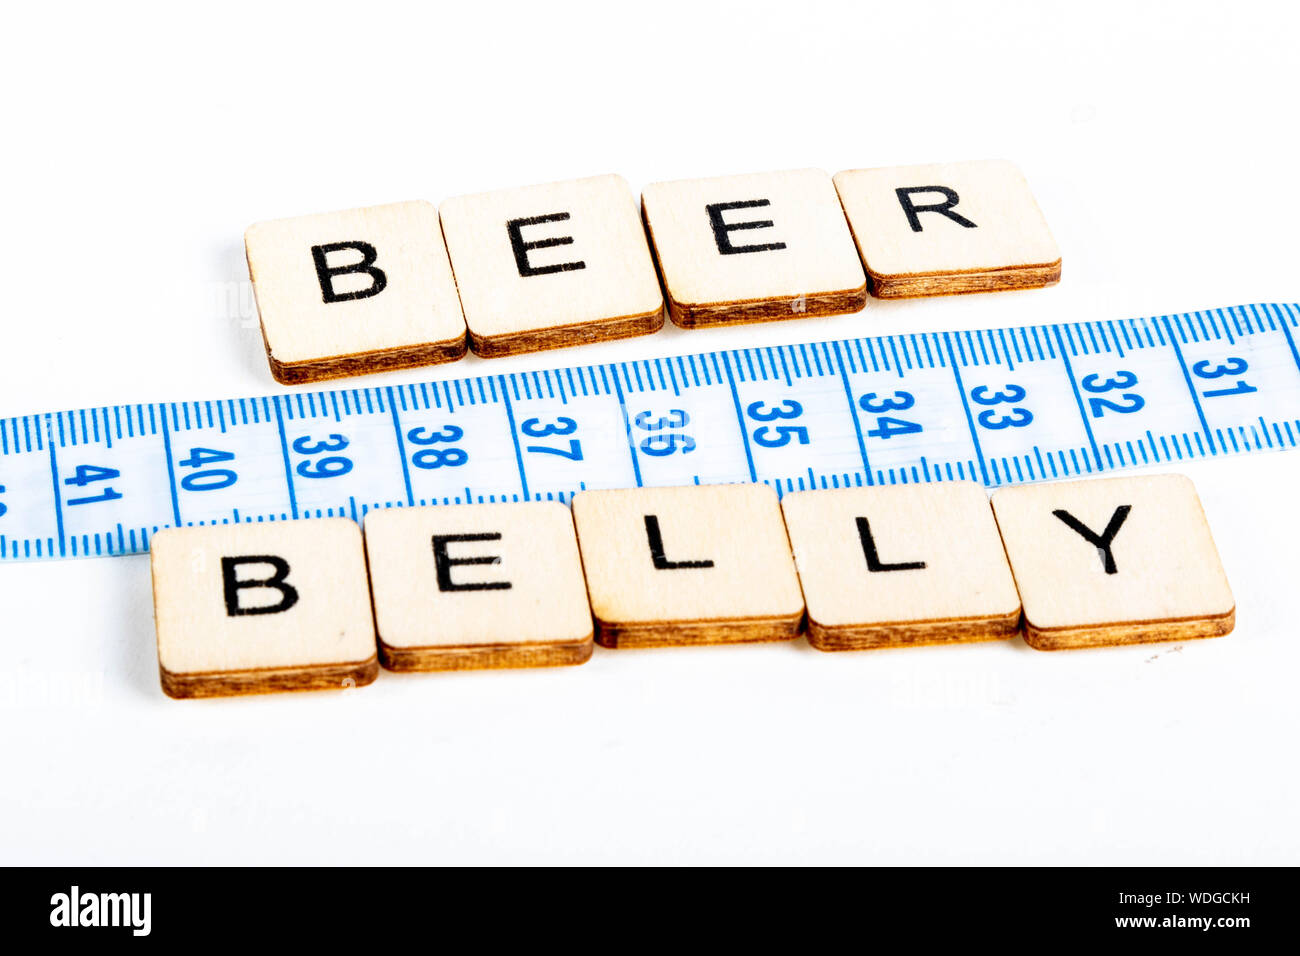 Gesundheit Konzept von einem Maßband messen auch die Nachricht Bierbauch Stockfoto